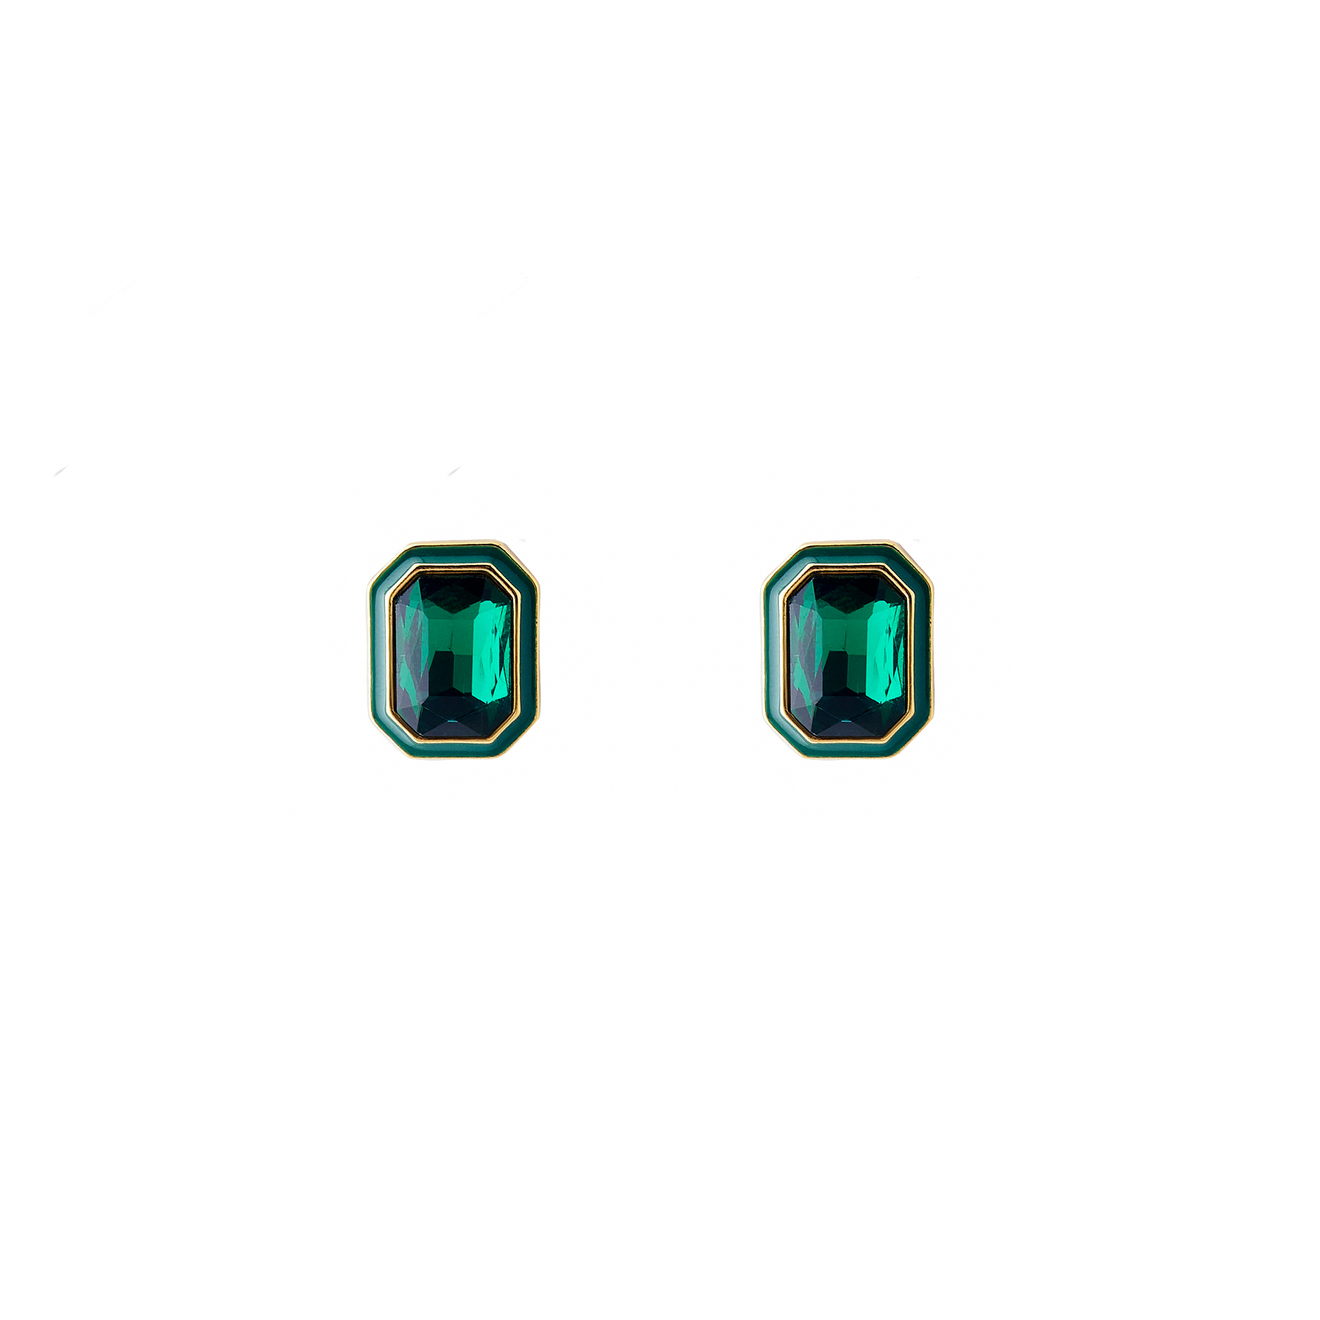 Herald Percy Крупные золотистые серьги с зелеными кристаллами и зеленой эмалью herald percy черненые серьги дуги с зелеными кристаллами